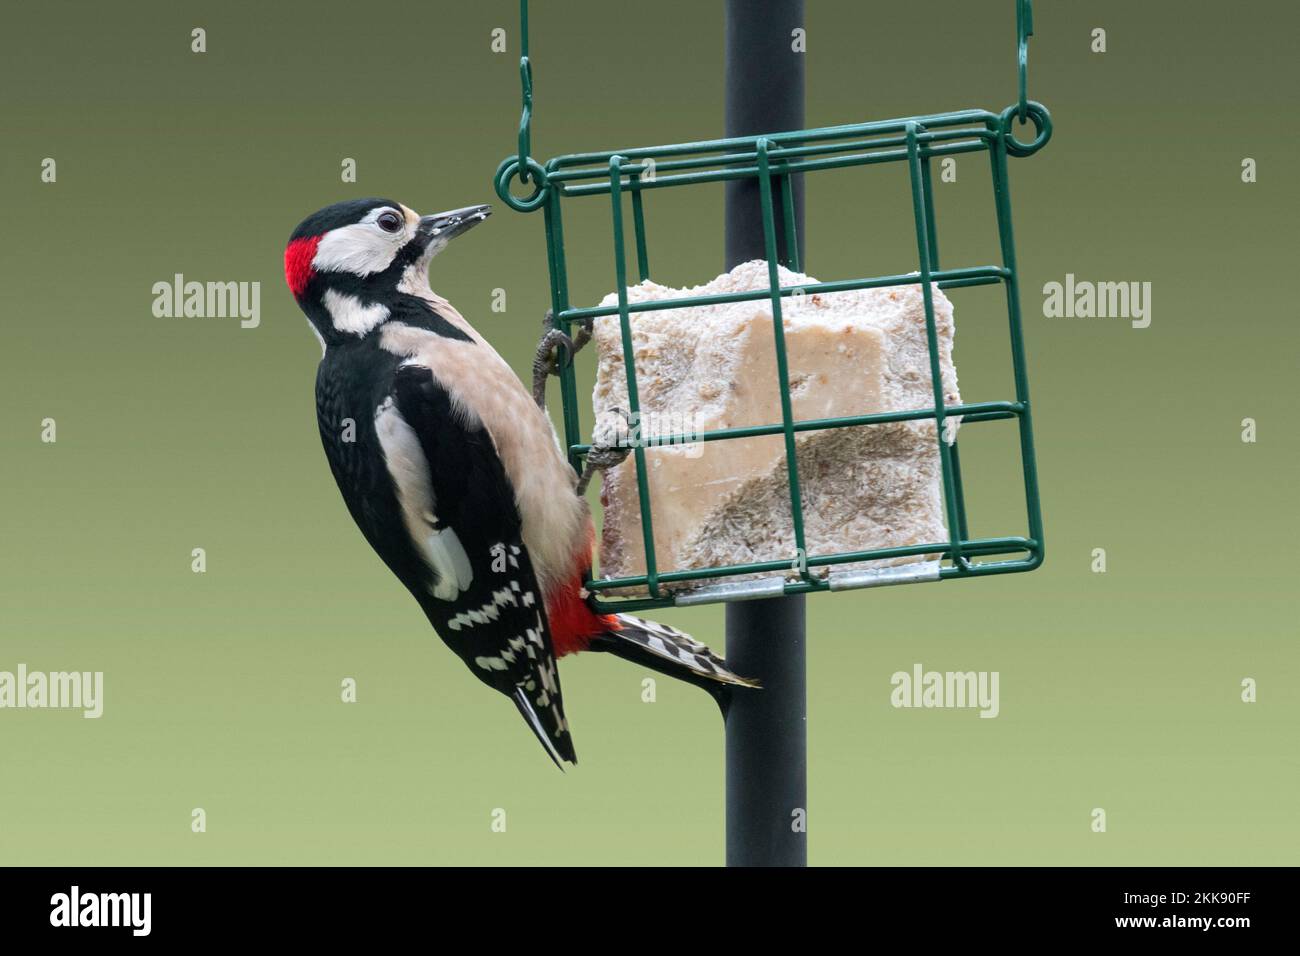 Gran pájaro carpintero manchado (Dendrocopos Major) macho comiendo grasa / sueto del alimentador de aves / alimentador de aves en el jardín en invierno Foto de stock